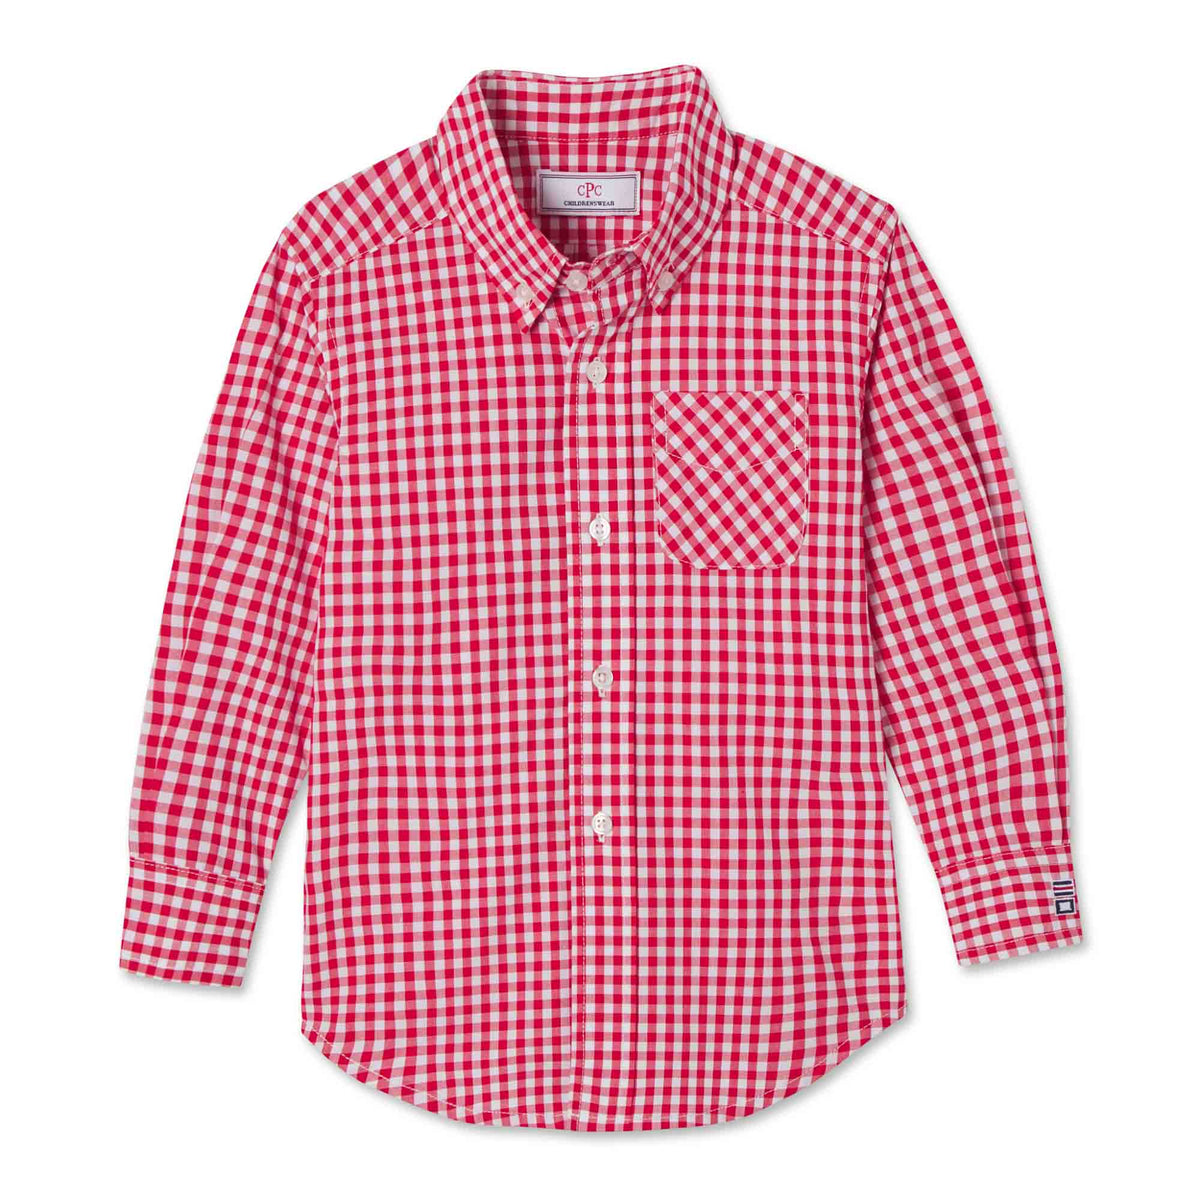 Classic and Preppy Owen Buttondown, Crimson Gingham-Shirts and Tops-Crimson Gingham-2T-CPC - Classic Prep Childrenswear